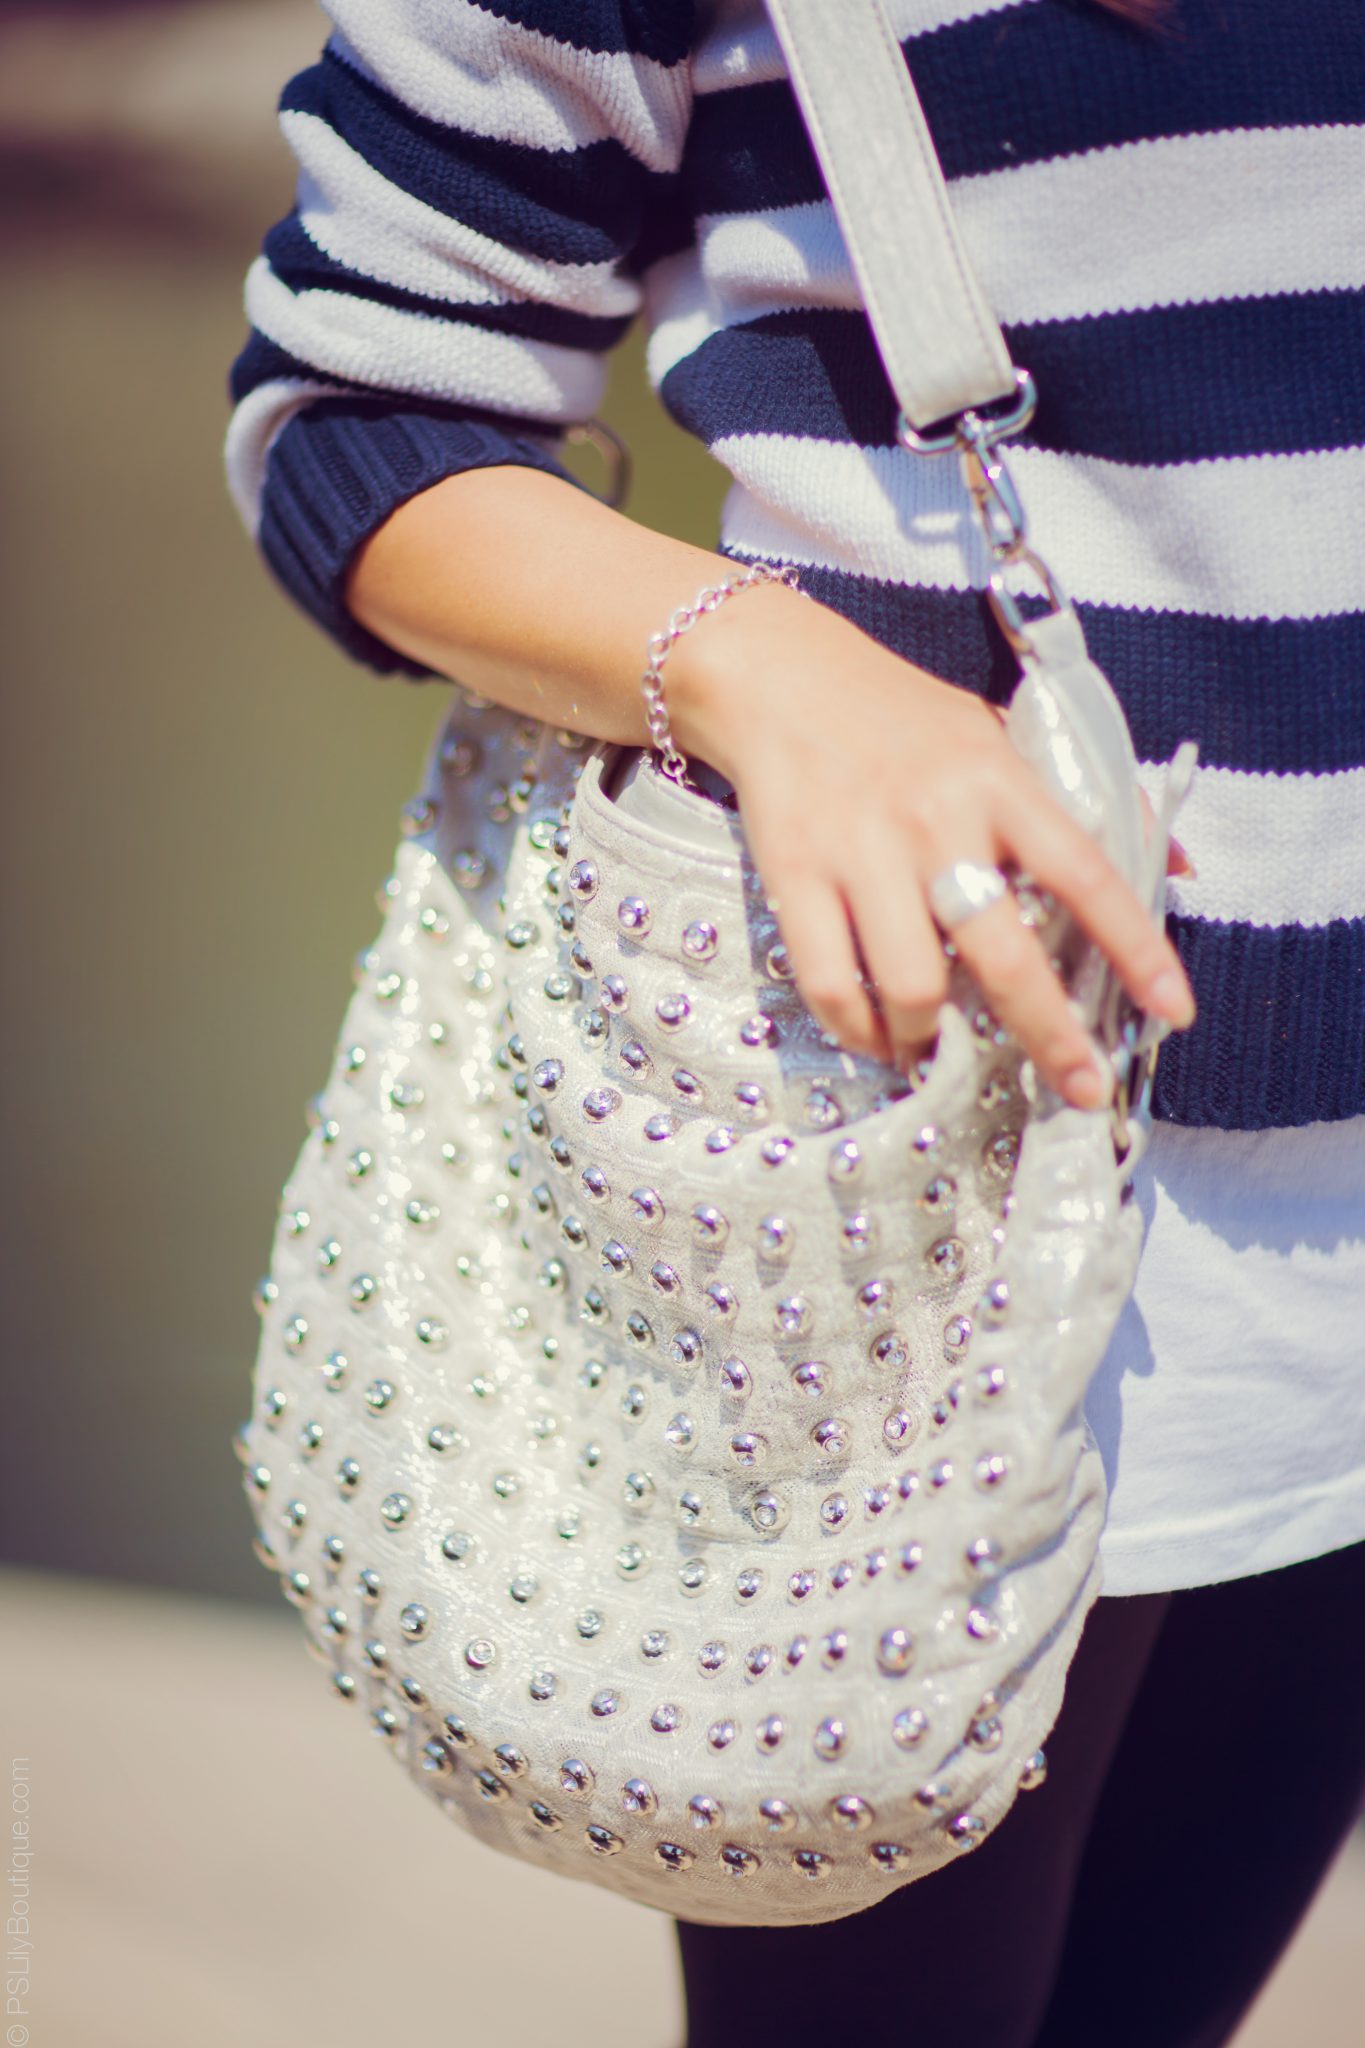 instagram-pslilyboutique-los-angeles-fashion-blogger-silver-studded-blue-elegance-bag-ring